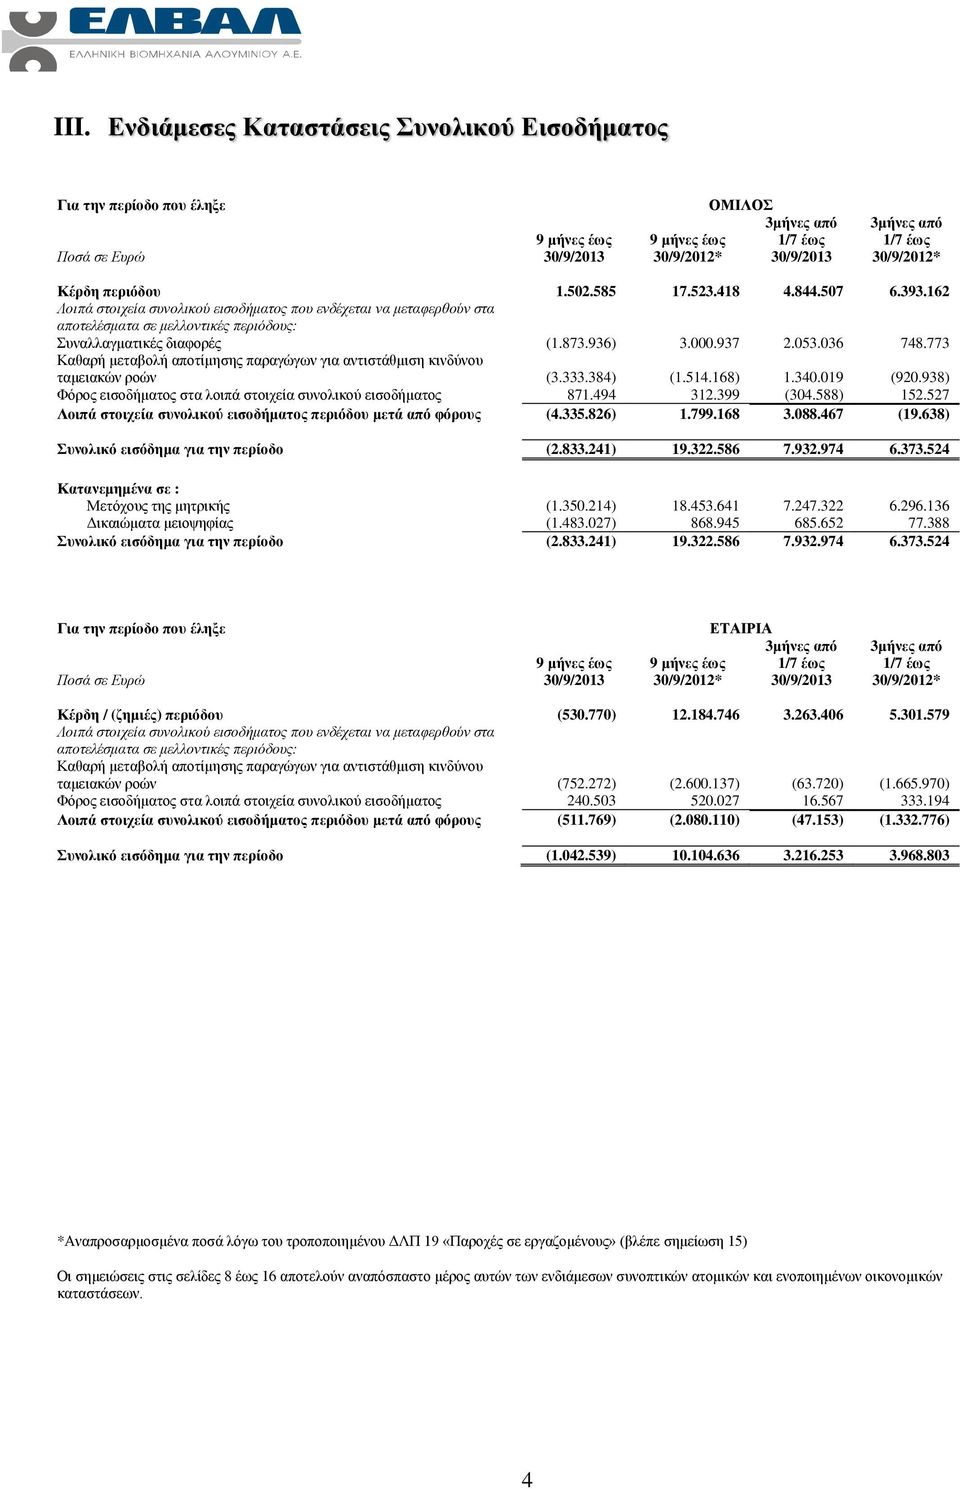 773 Καθαρή μεταβολή αποτίμησης παραγώγων για αντιστάθμιση κινδύνου ταμειακών ροών (3.333.384) (1.514.168) 1.340.019 (920.938) Φόρος εισοδήματος στα λοιπά στοιχεία συνολικού εισοδήματος 871.494 312.